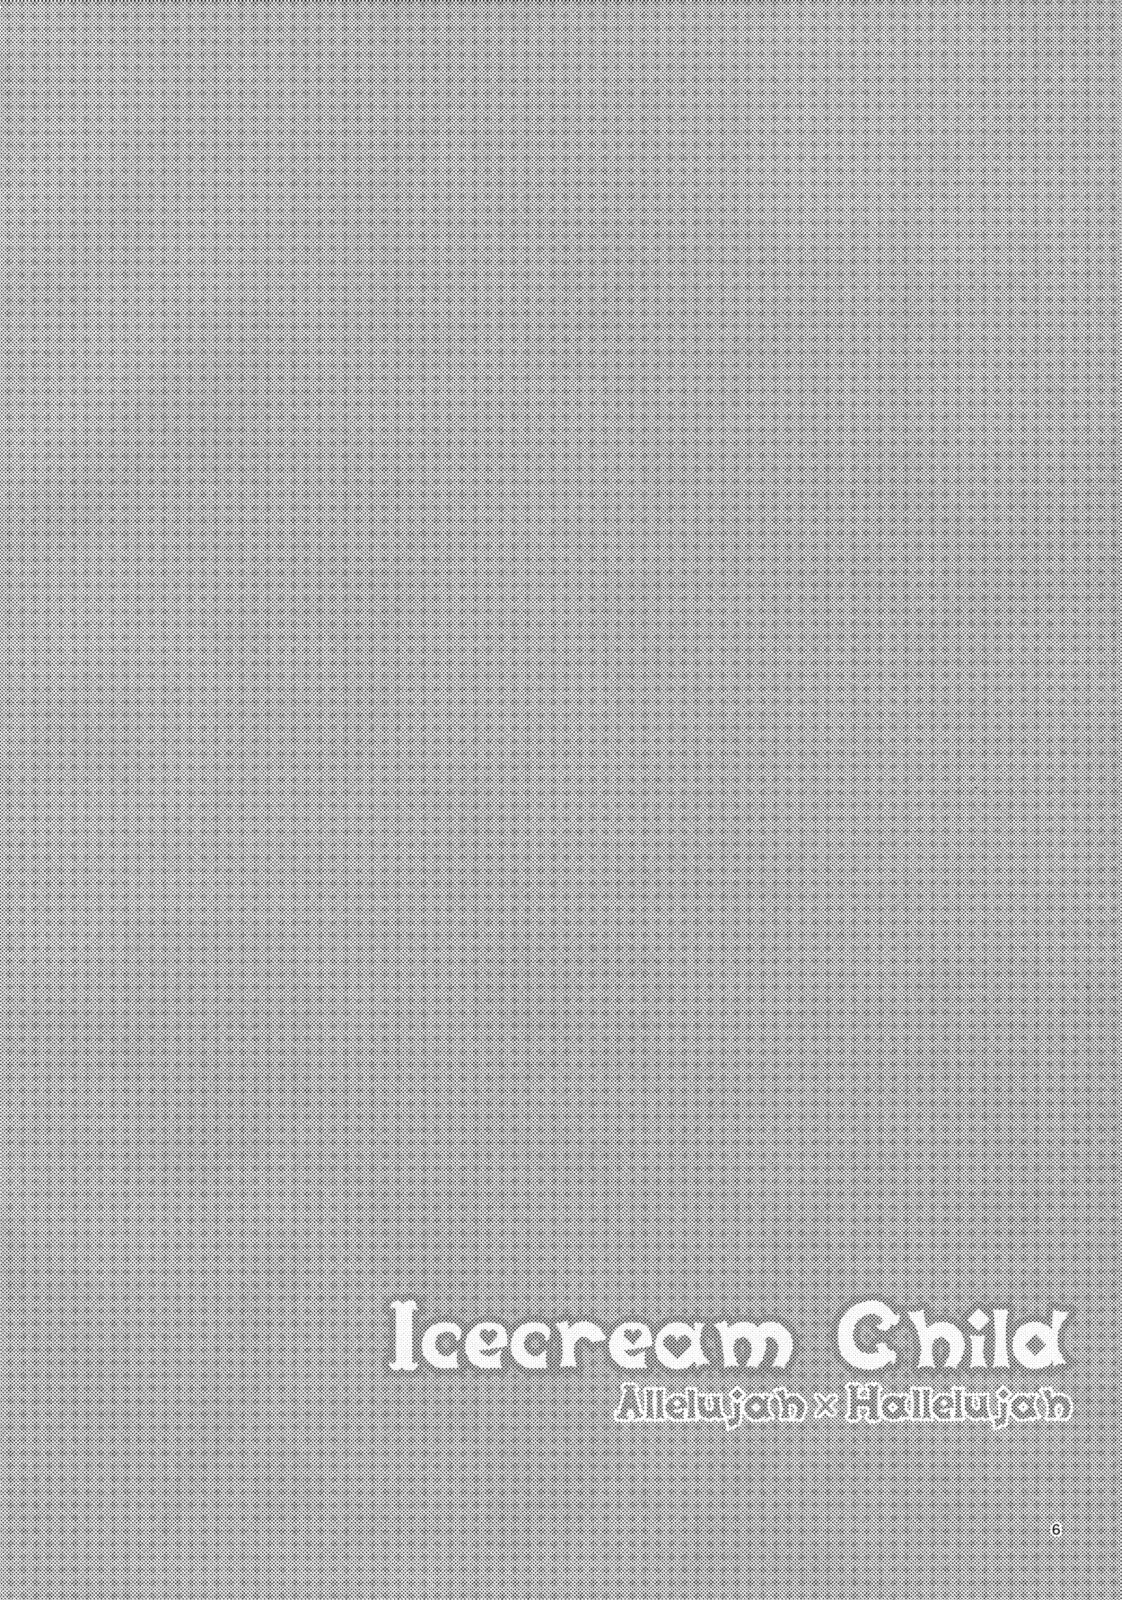 Icecream Child 4